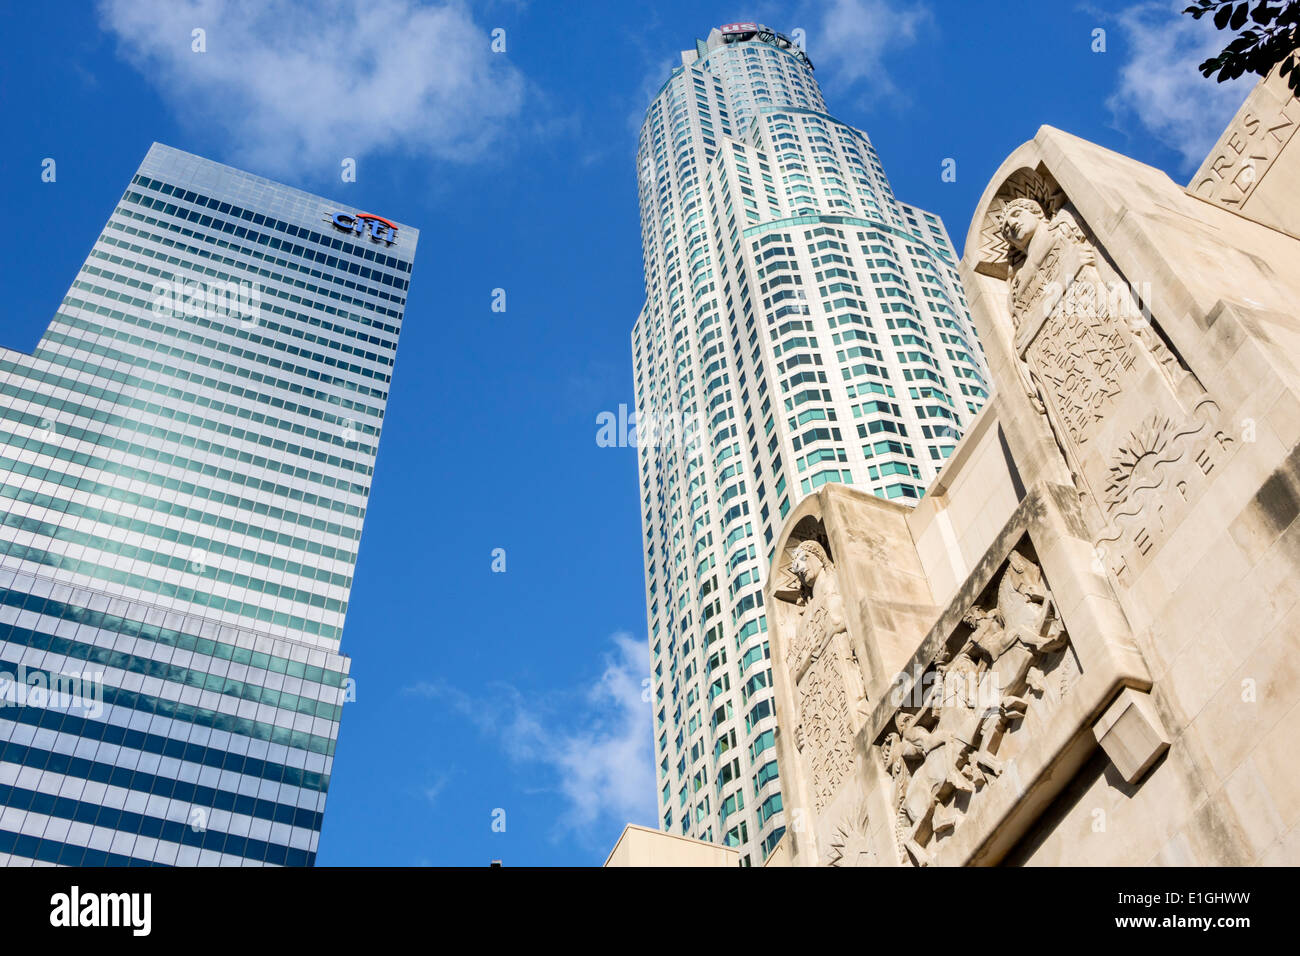 Los Angeles Californie, quartier financier, gratte-ciel de la ville, US Bank Tower Library Tower, architecture postmoderne PEI Cobb plus haut CITIG Banque D'Images